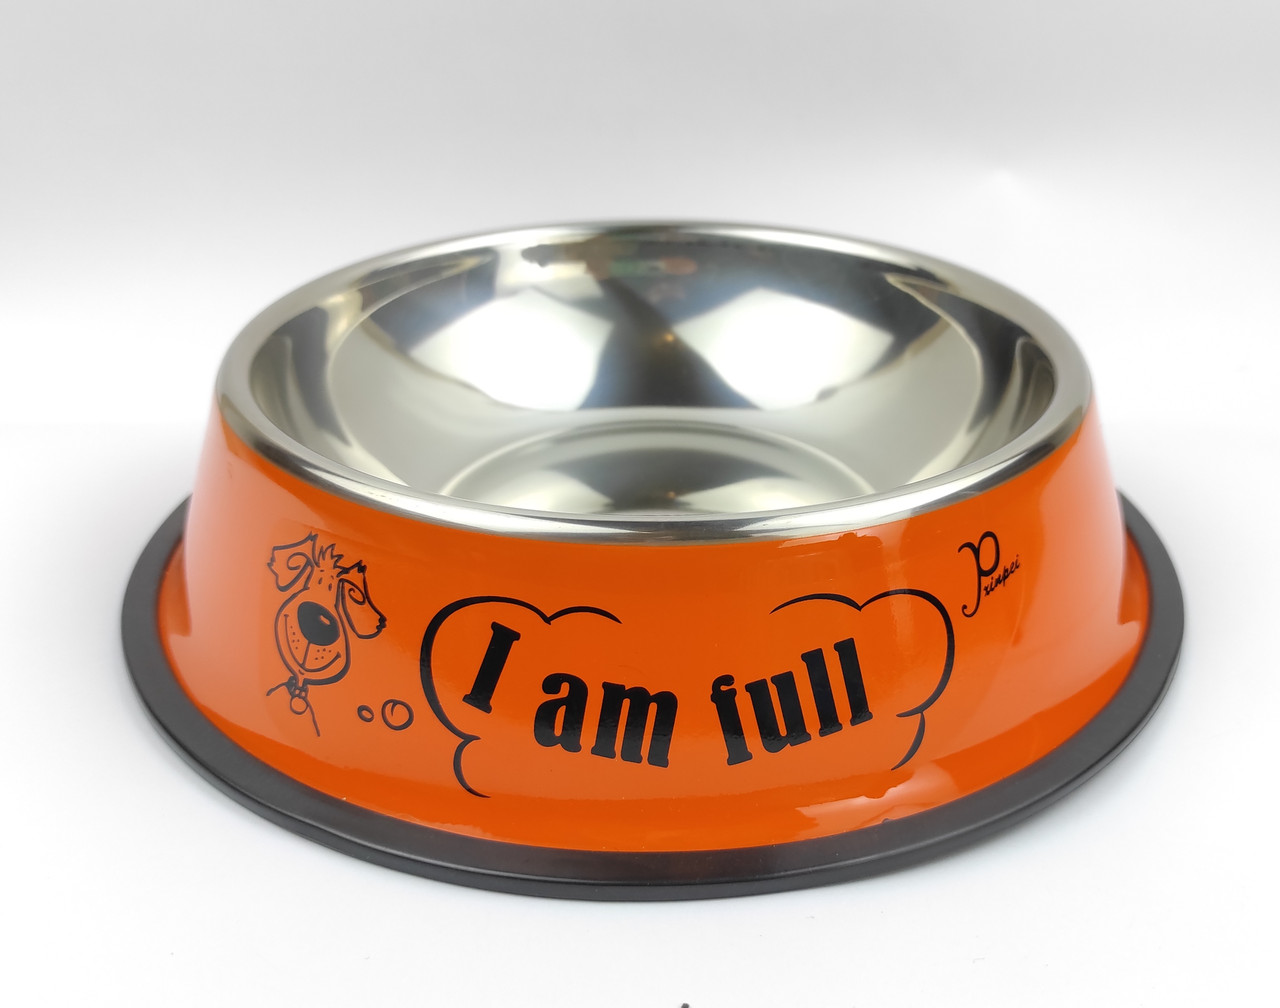 

Миска для собак металлическая DogClub Print 800ml Оранжевый